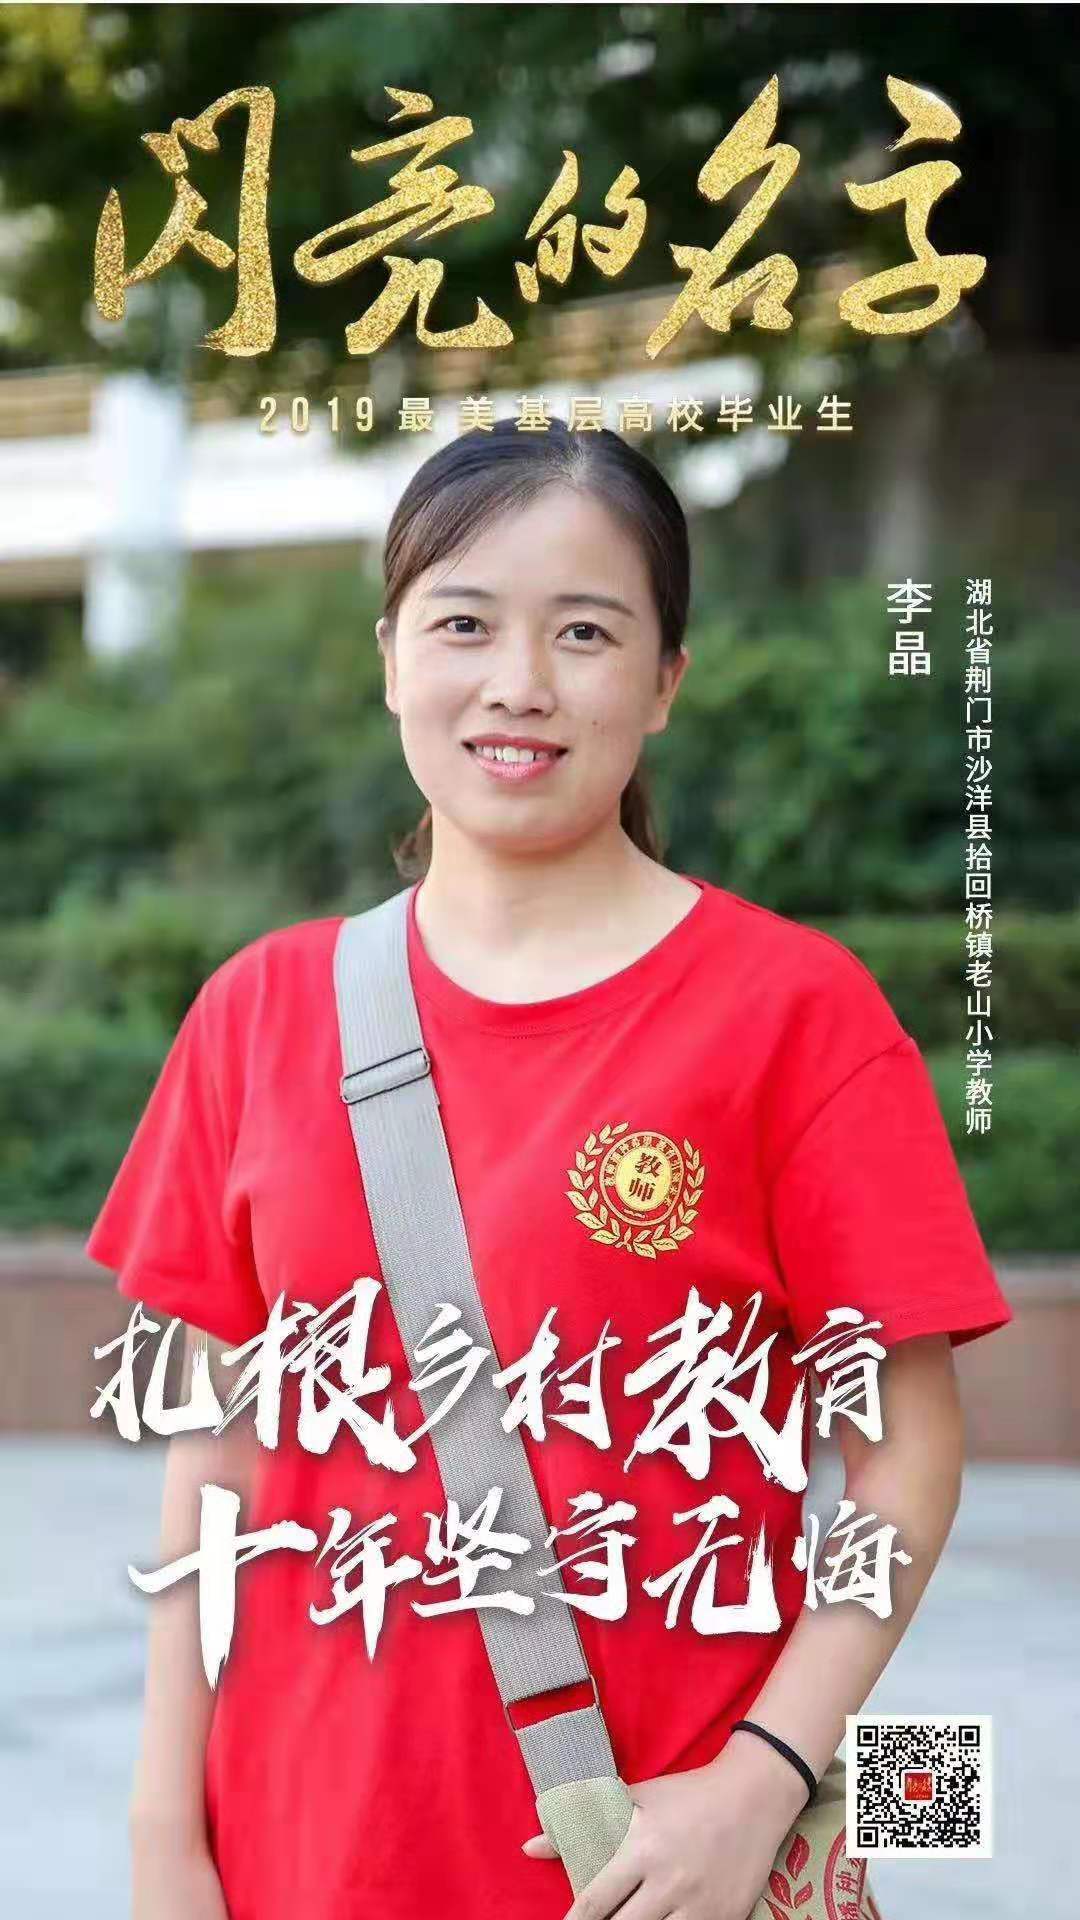  沙洋县拾回桥镇老山小学教师李晶被评为2019年“最美基层高校毕业生”